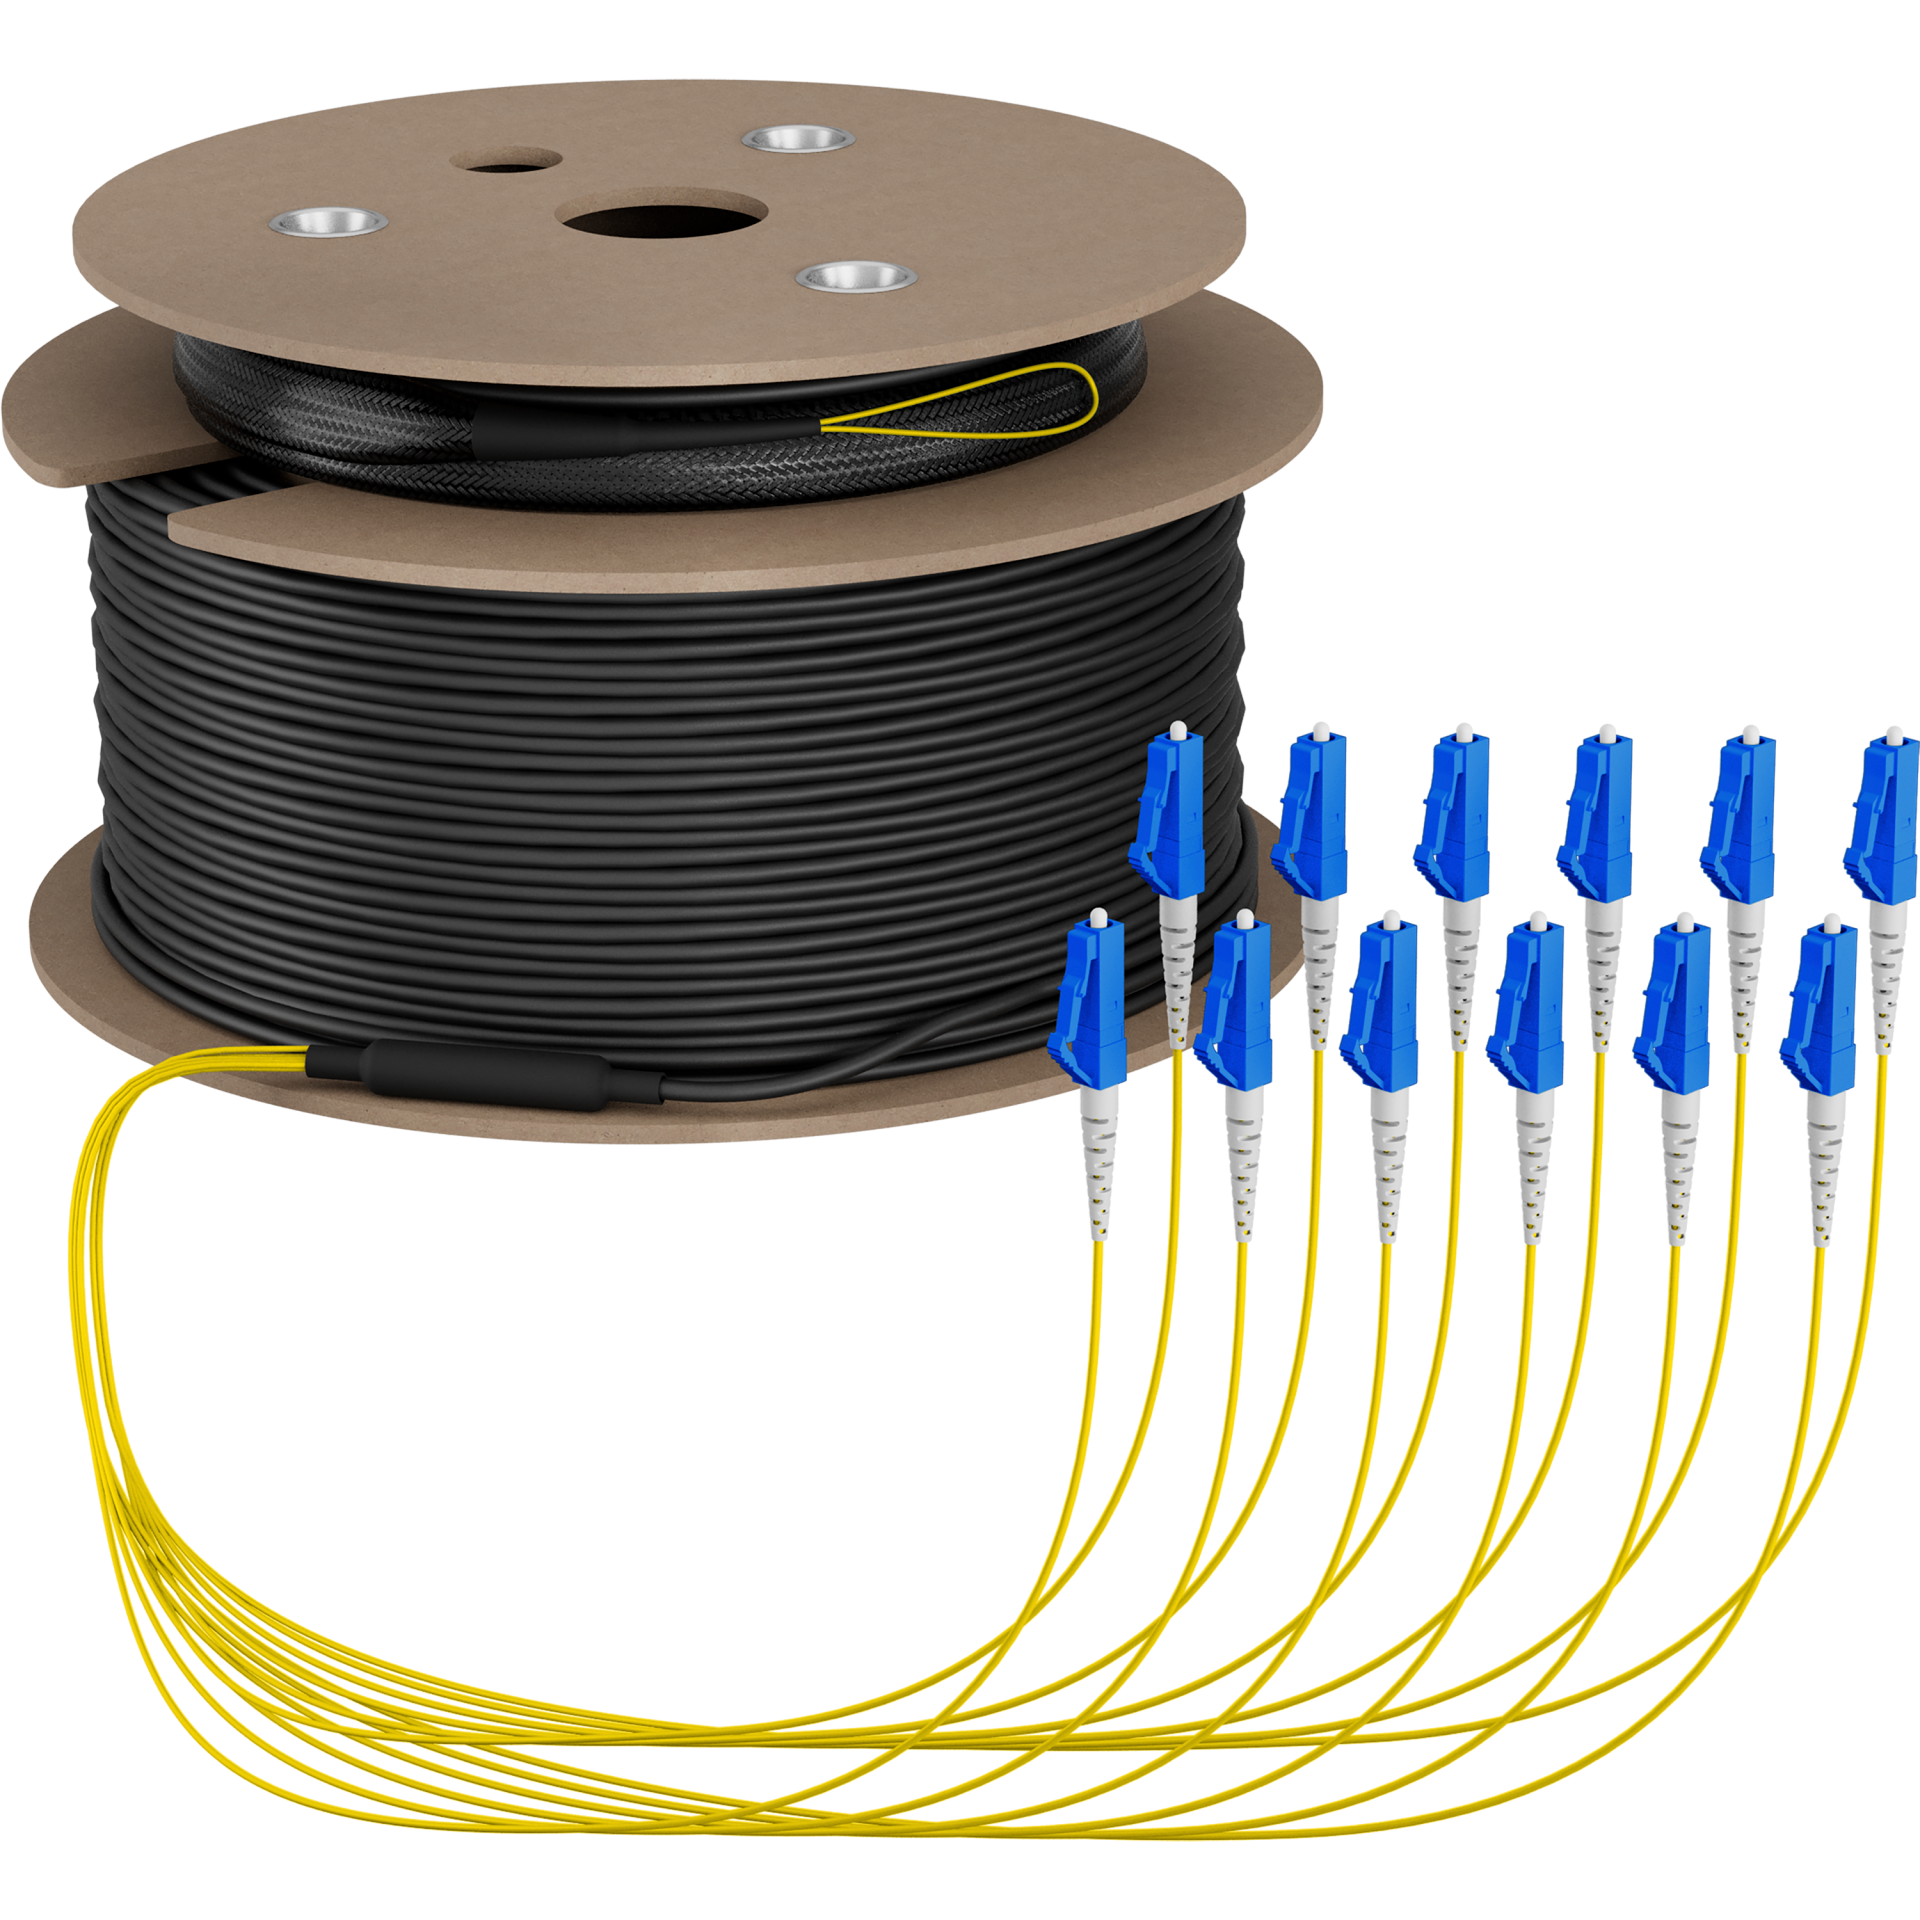 Trunk cable U-DQ(ZN)BH OS2 12E (1x12) LC-LC,100m Dca LSZH